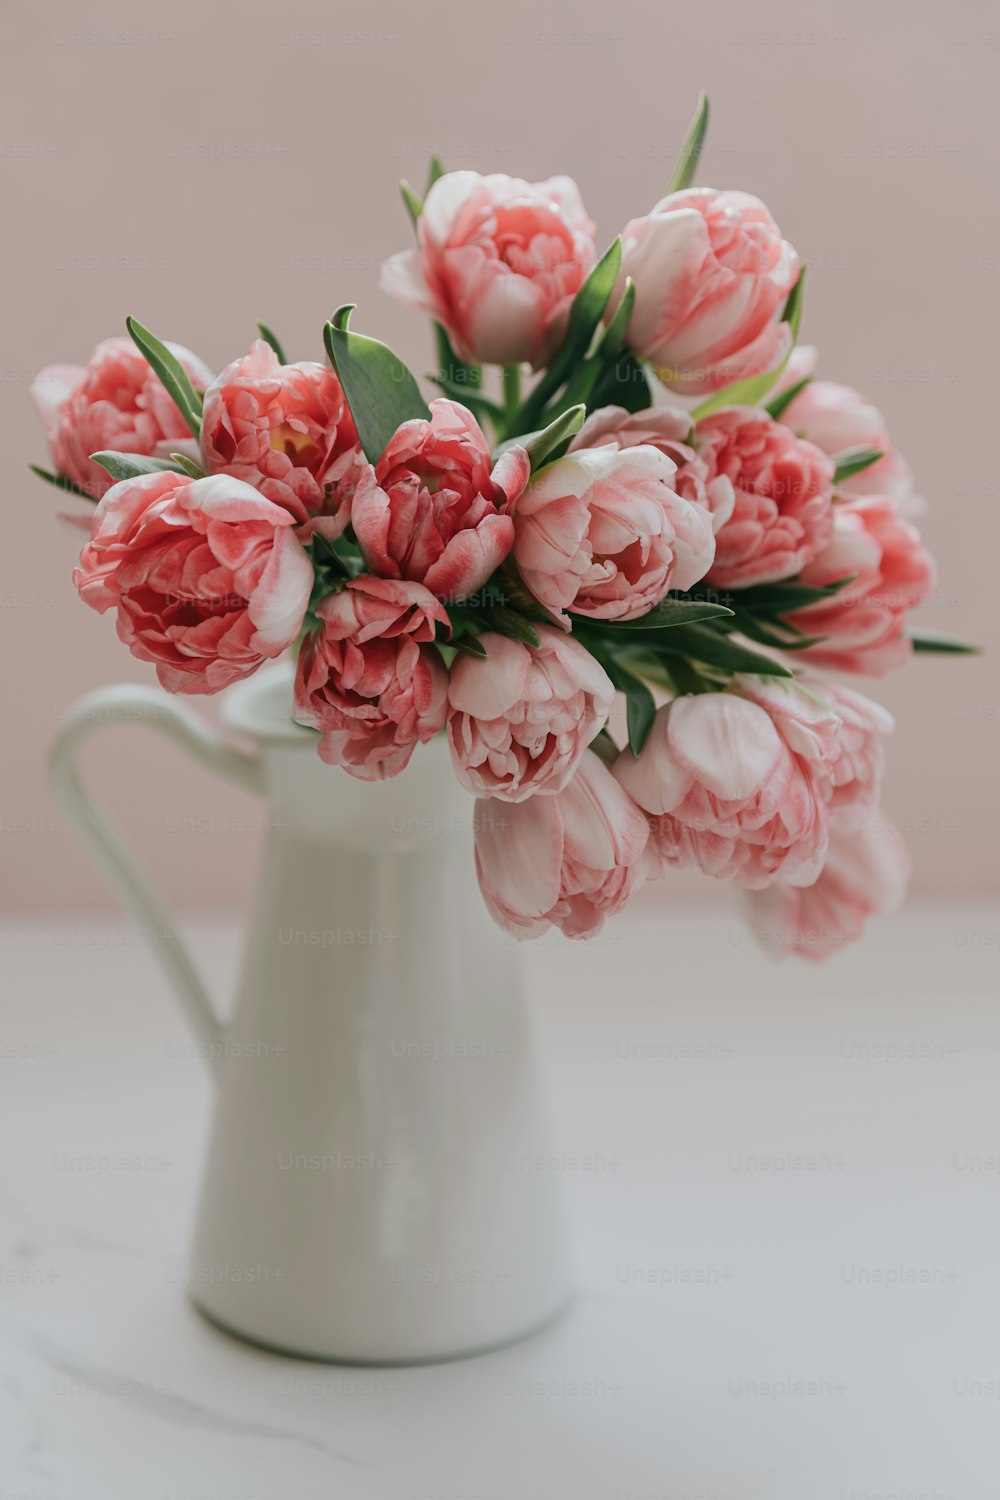 테이블 위에 분홍색 꽃으로 가득 찬 흰색 꽃병